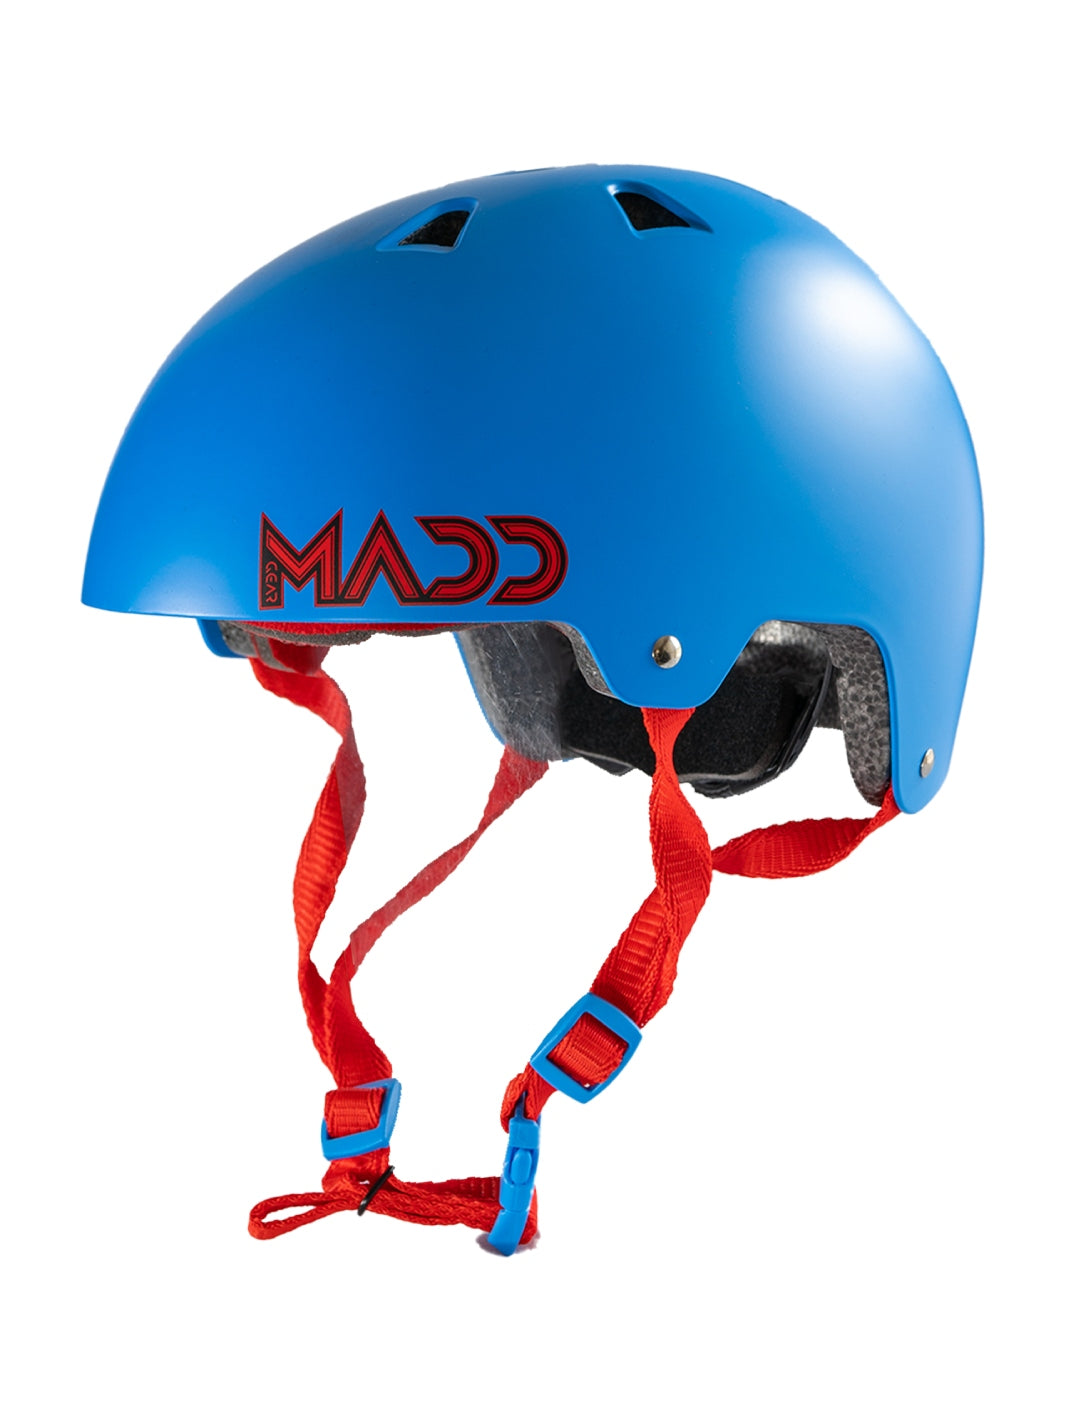 MADD GEAR HELMET XS/S BLUE / RED